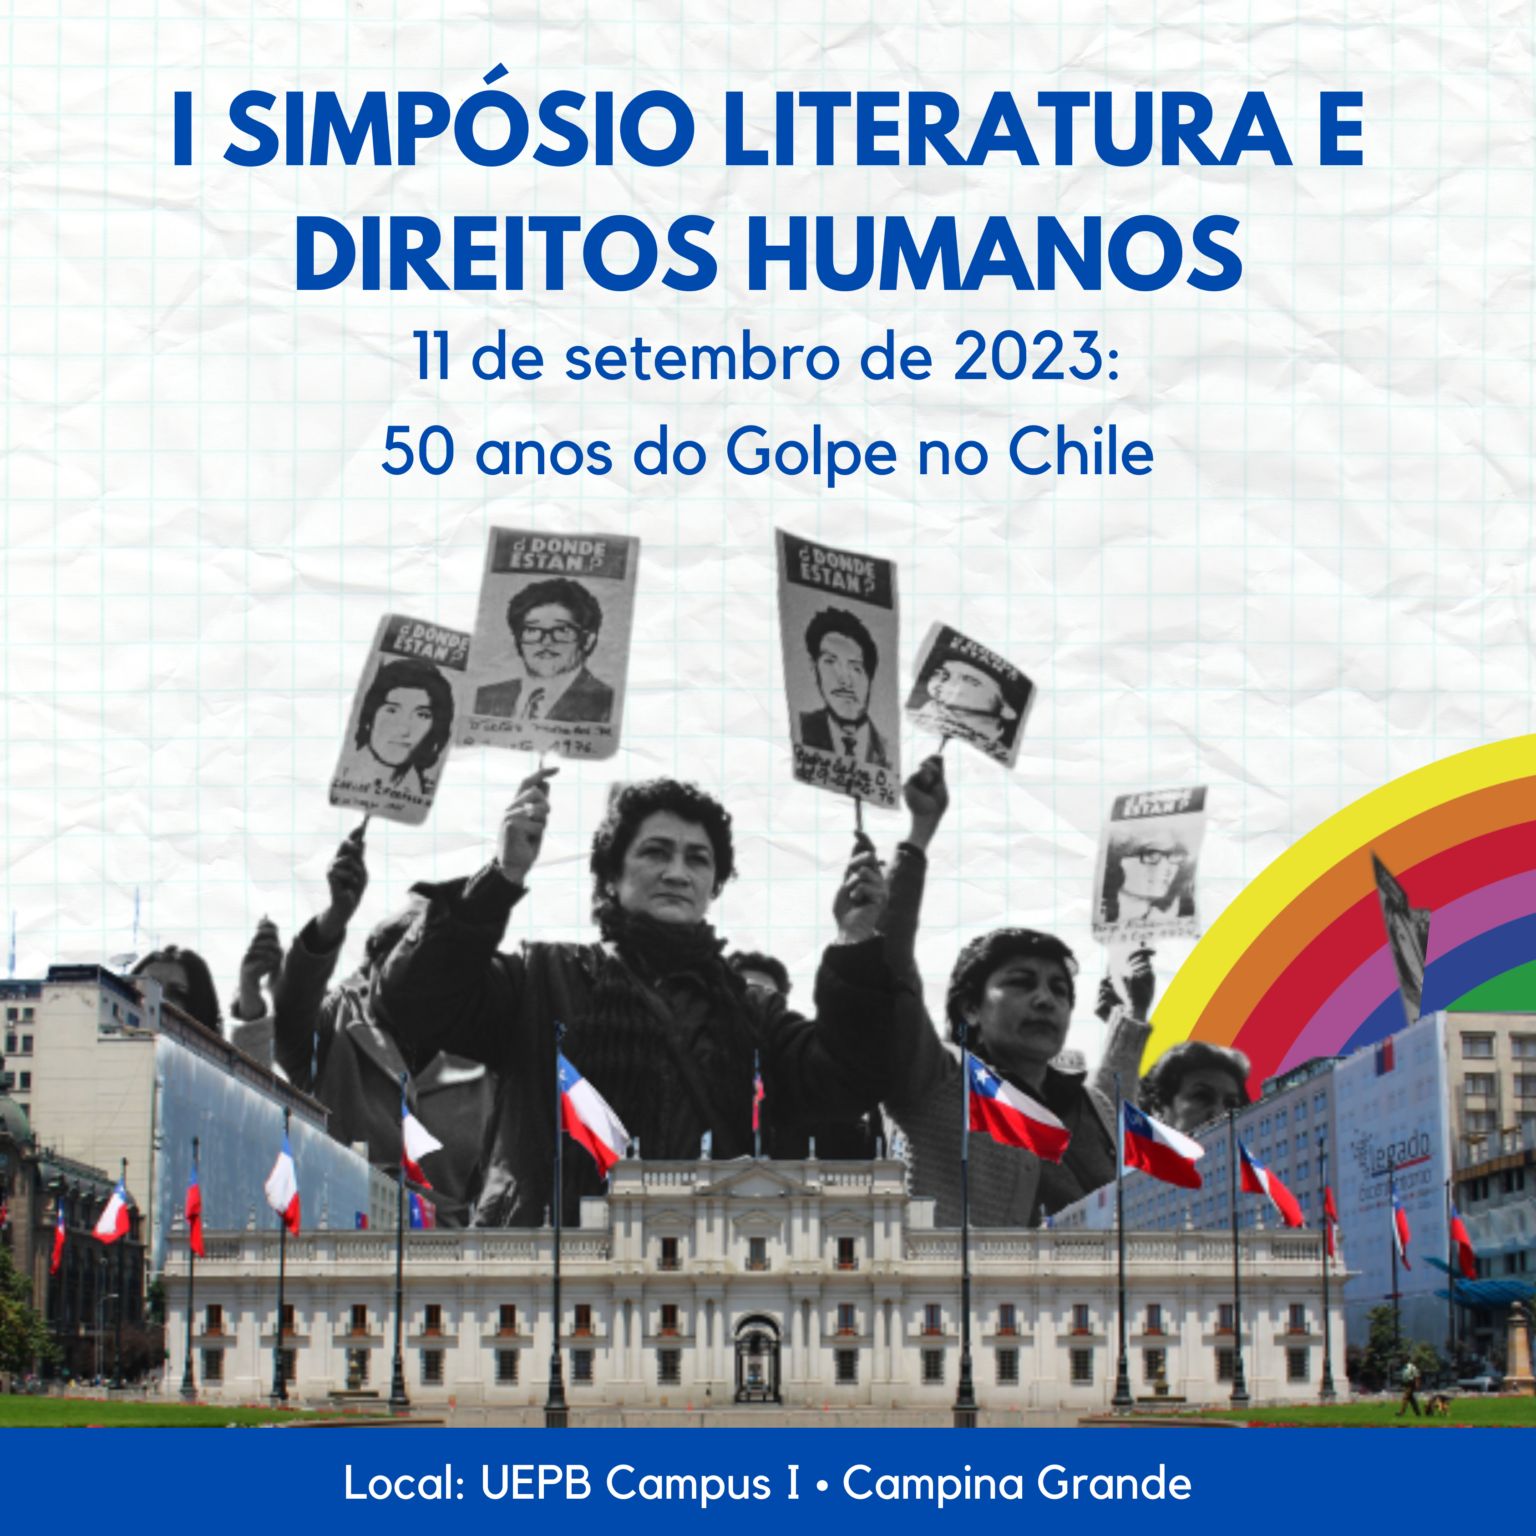 SIMPOSIO - Simpósio de Literatura e Direitos Humanos faz abordagem sobre os 50 anos do golpe militar do Chile